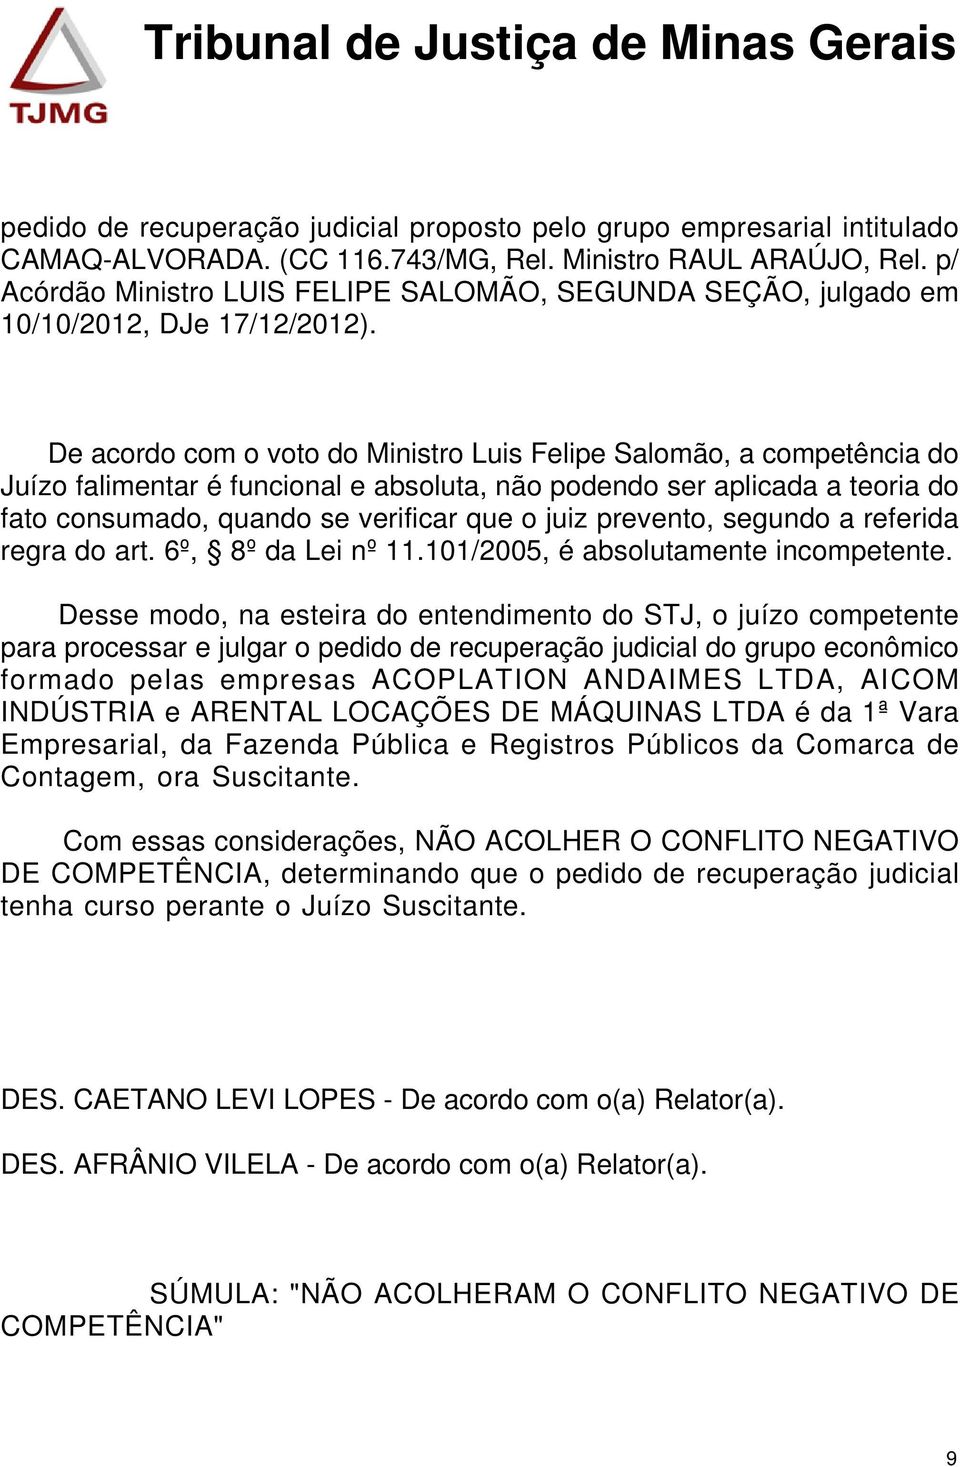 De acordo com o voto do Ministro Luis Felipe Salomão, a competência do Juízo falimentar é funcional e absoluta, não podendo ser aplicada a teoria do fato consumado, quando se verificar que o juiz